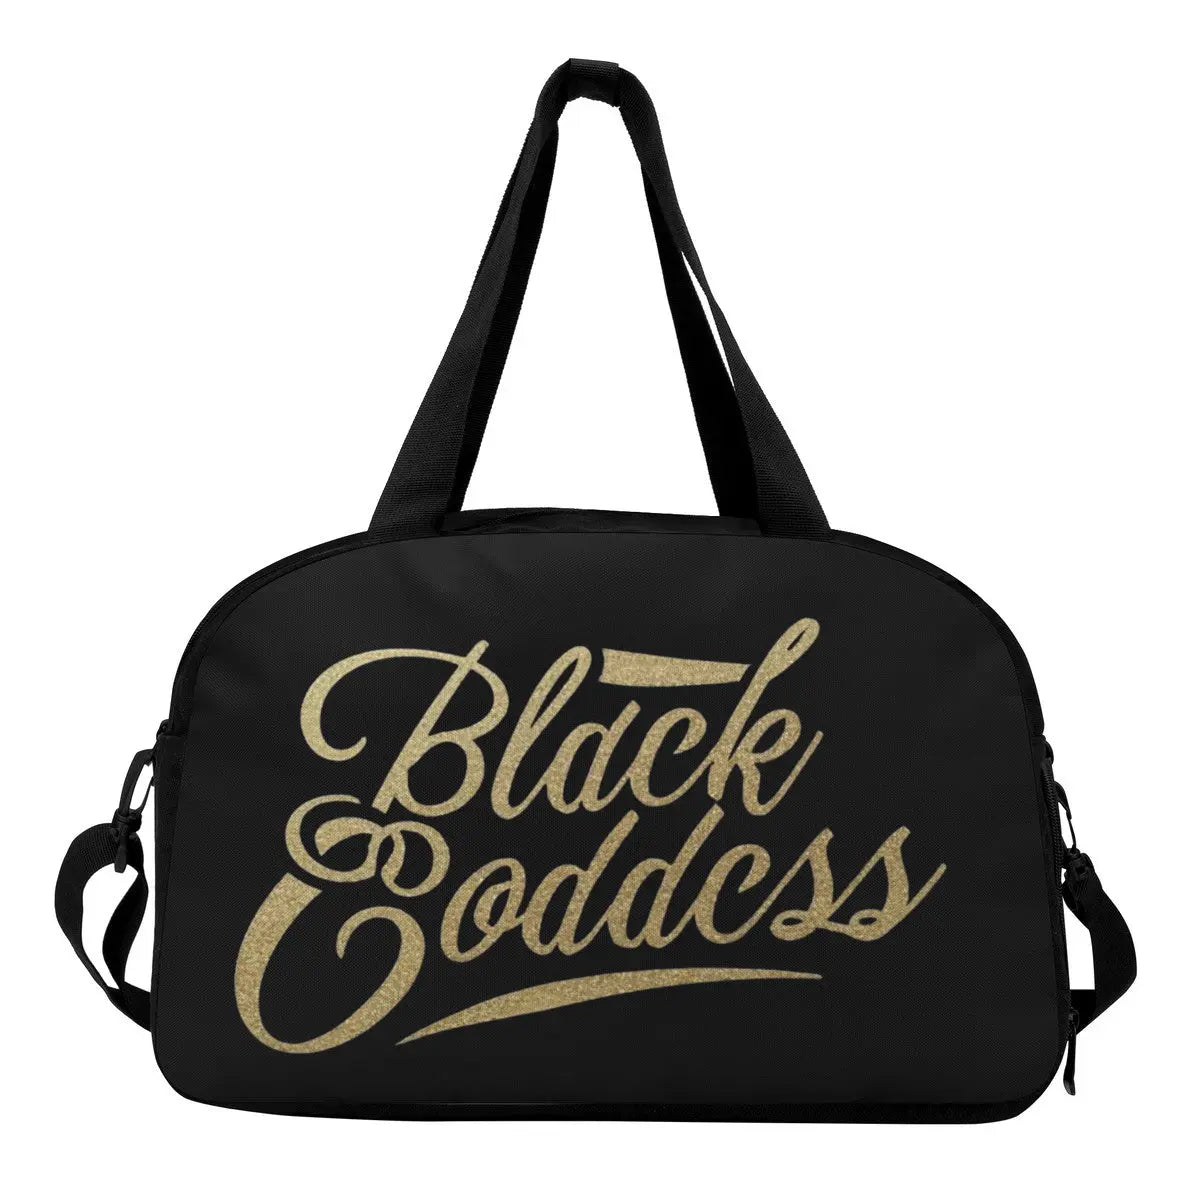 Black Goddess Traveling Day Bag